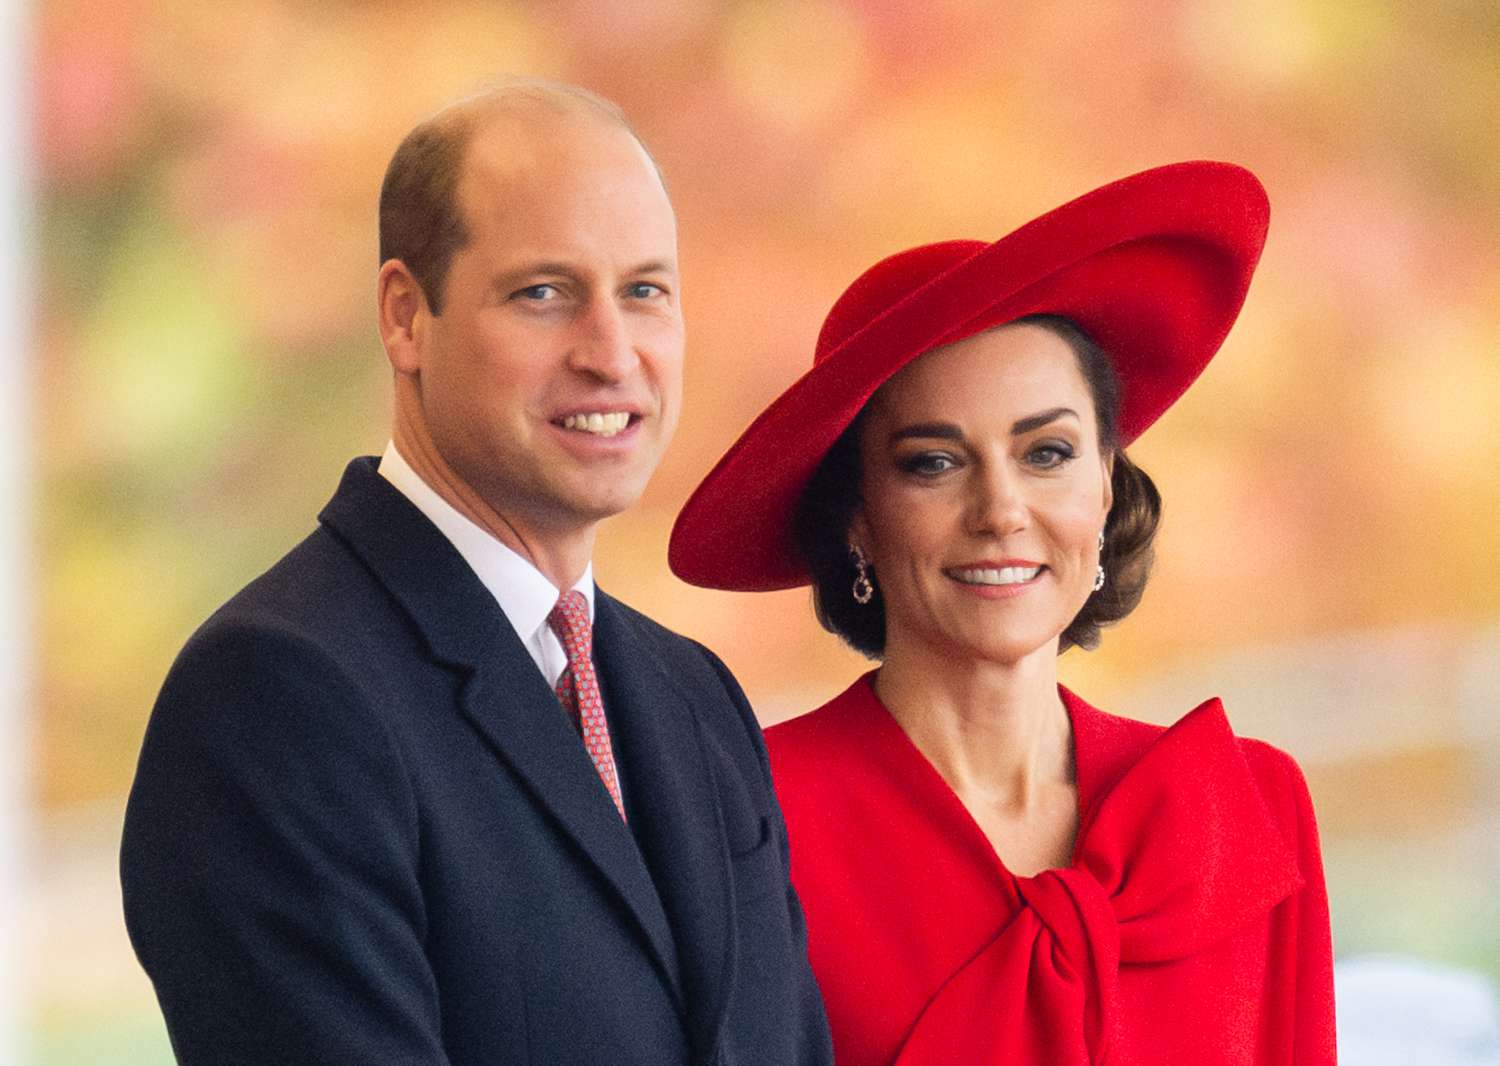 ¡Amor eterno en una foto! La imagen inédita del príncipe William y Kate en su aniversario